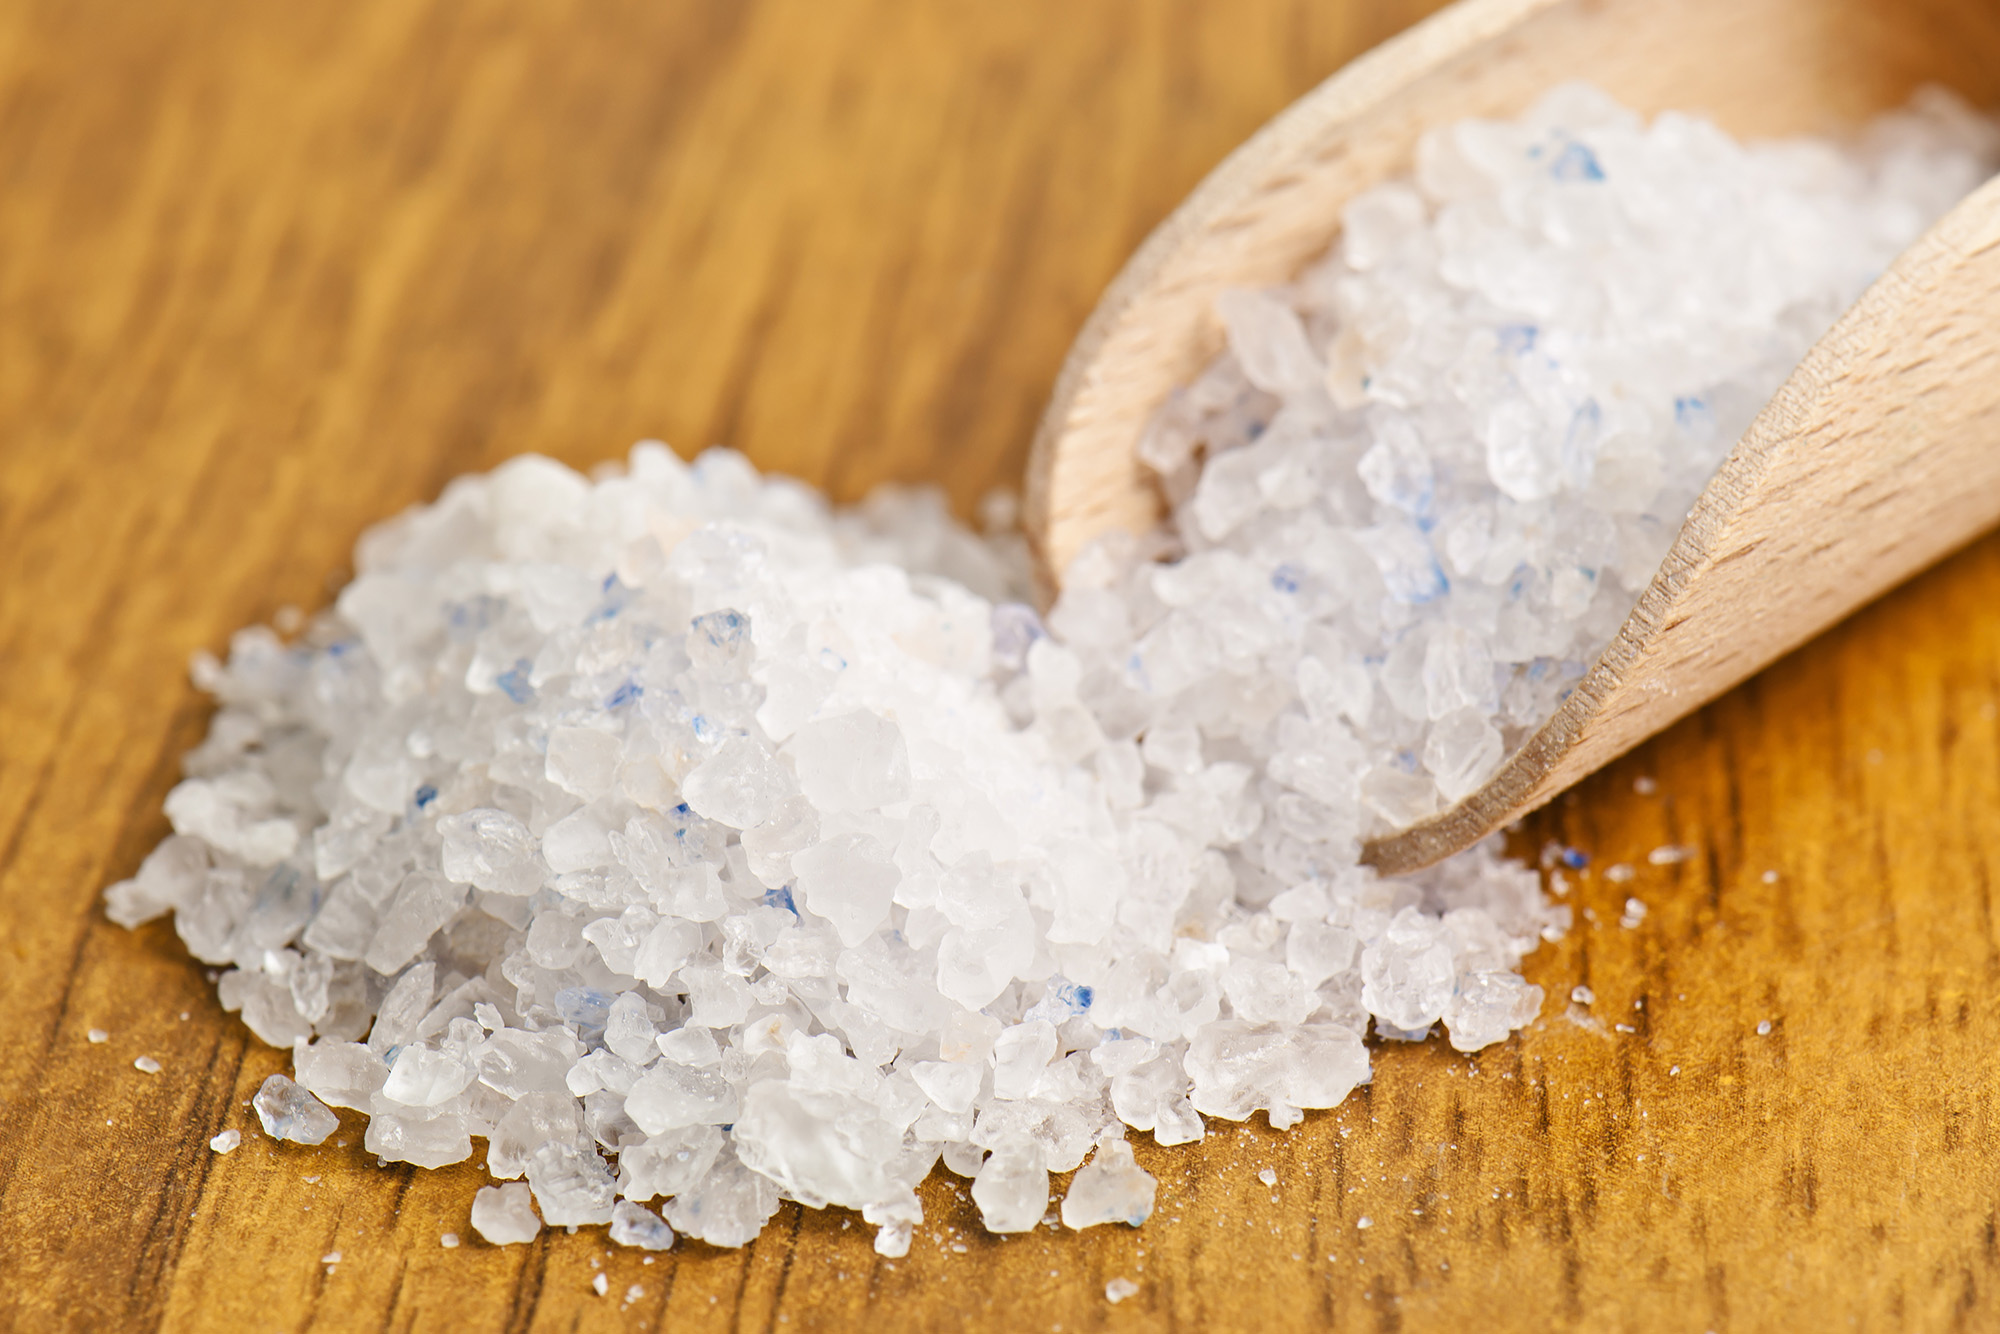 Персидская соль не полностью окрашена в голубой цвет, а имеет лишь небольшие вкрапления. Упаковку такой соли весом 250 г можно купить за 1490 ₽. Фото: Vova Shevchuk / Shutterstock